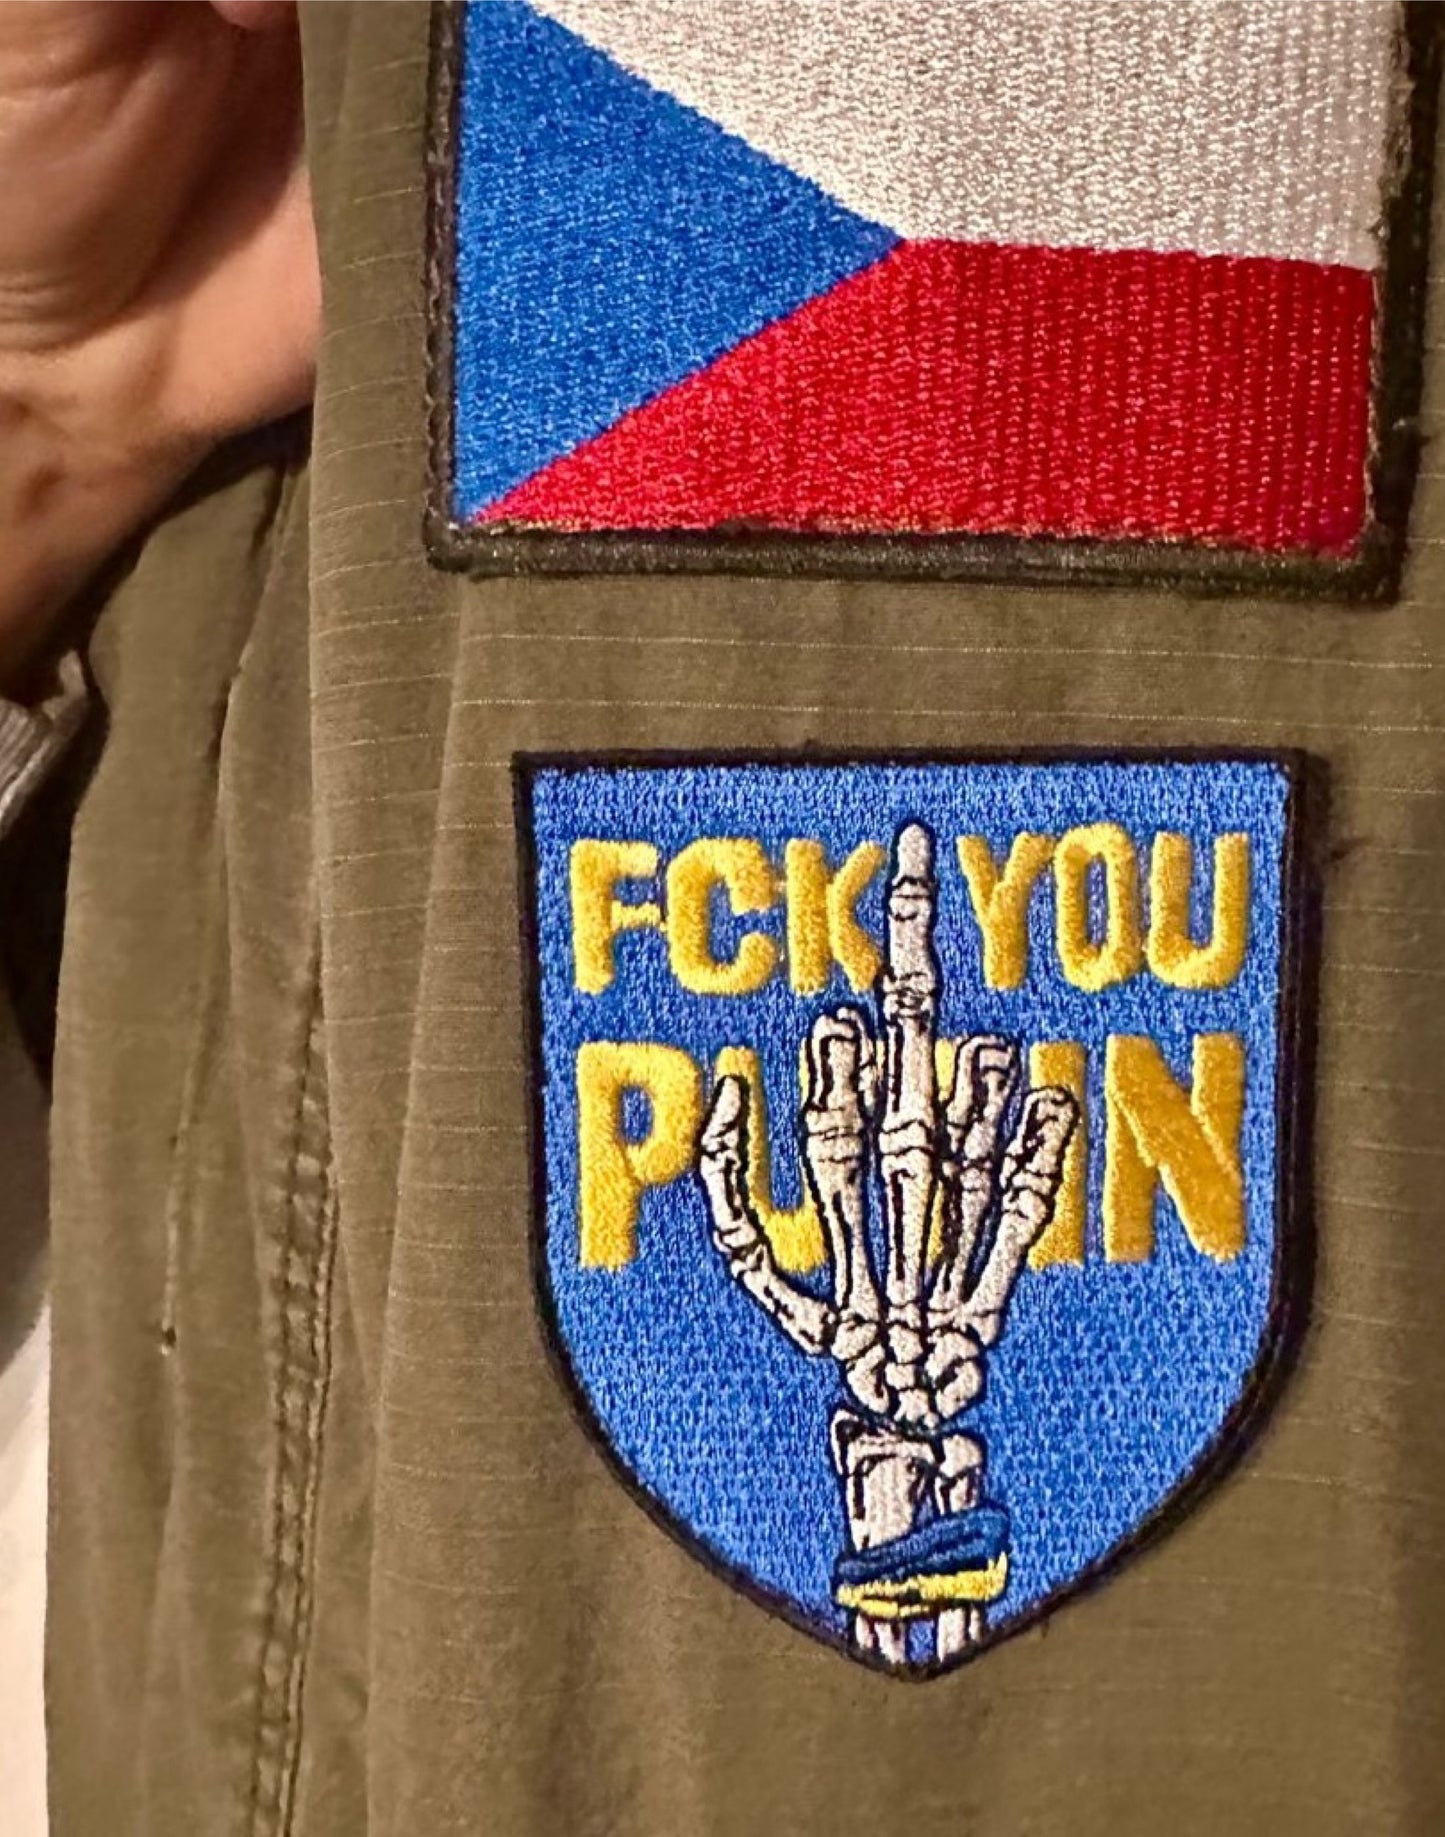 Fuck You Putin patch